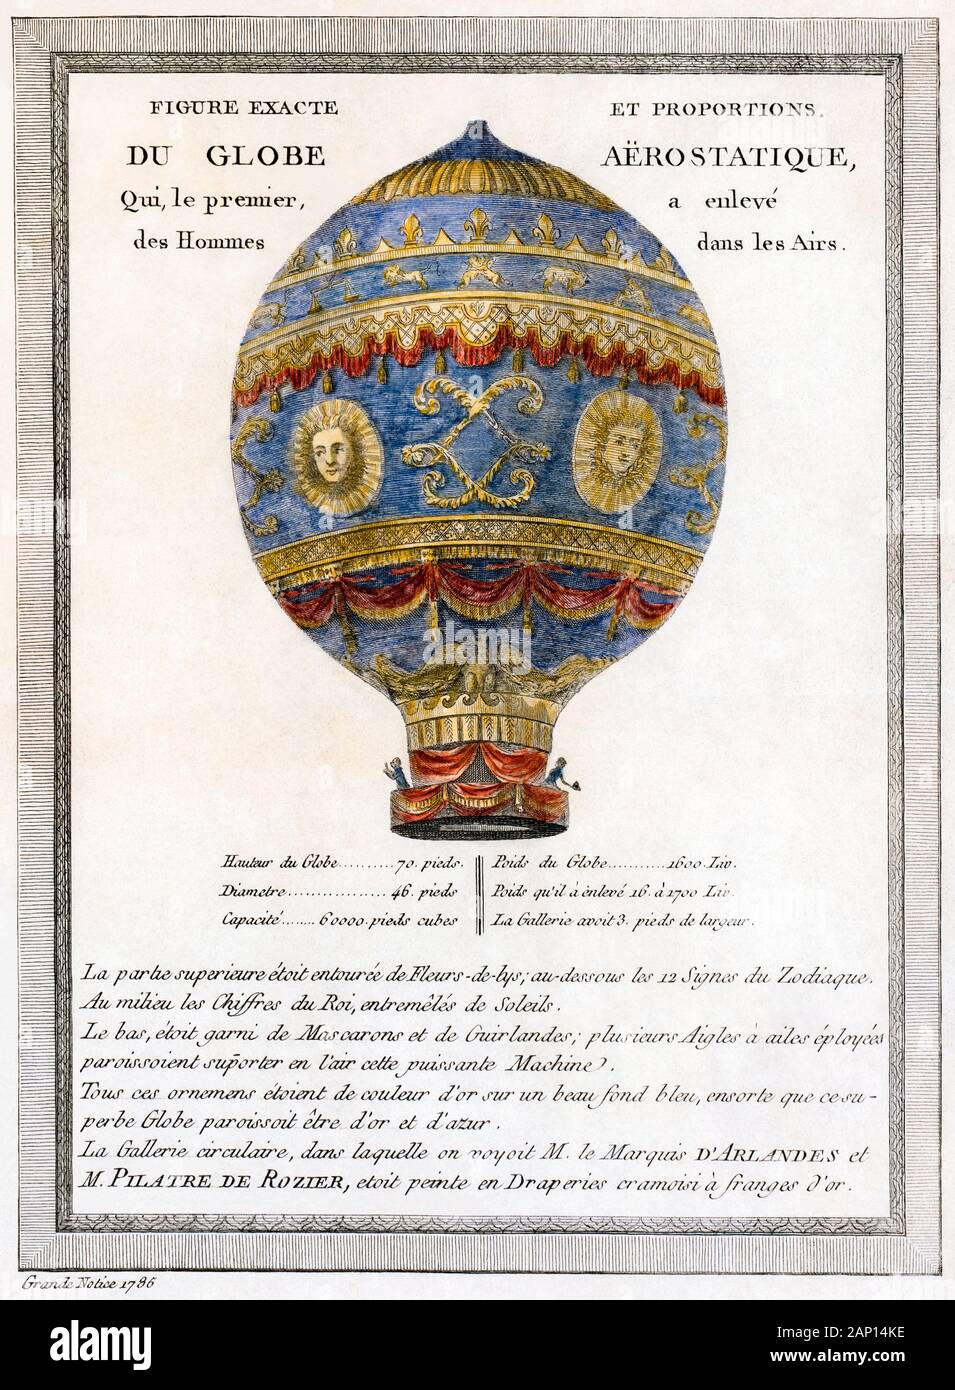 Globe aérostatique, frères Montgolfier', hot air balloon, illustration, 1783 Banque D'Images